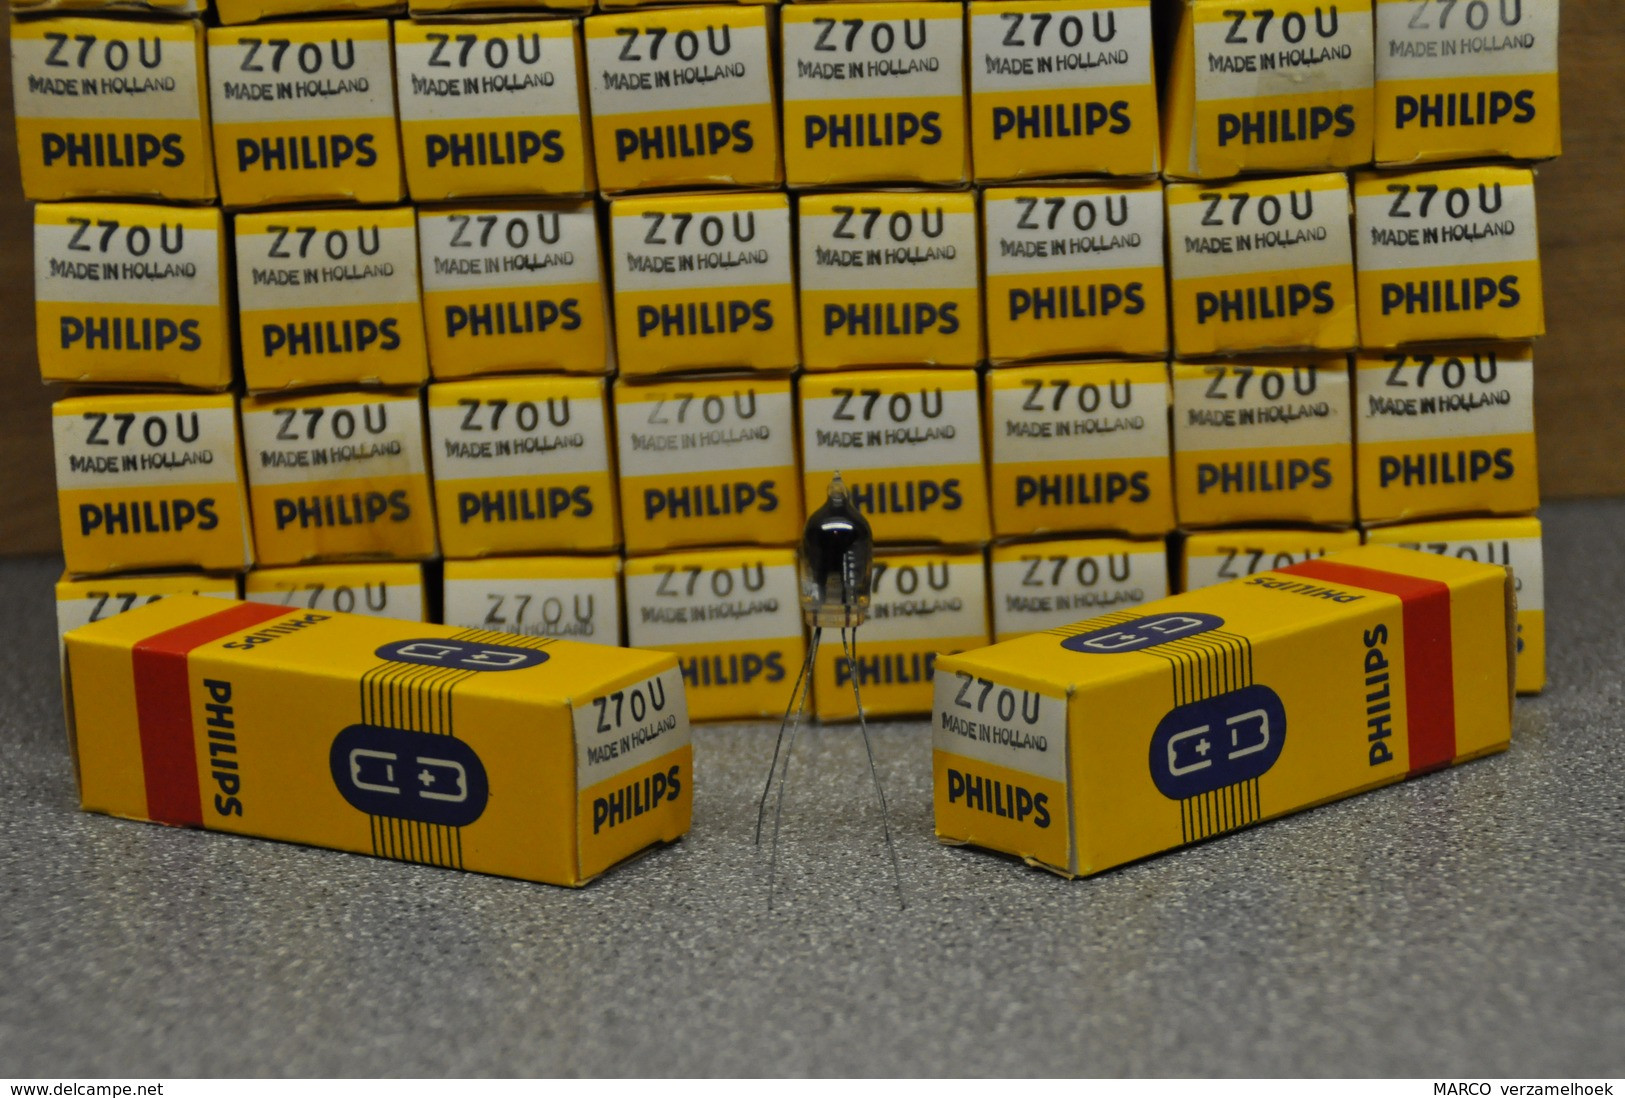 Philips Buis-röhre-tube Z70U (7710 - GR43) Thyratron Tube New (jukebox) Neonbuisje Glimmröhre - Vacuum Tubes